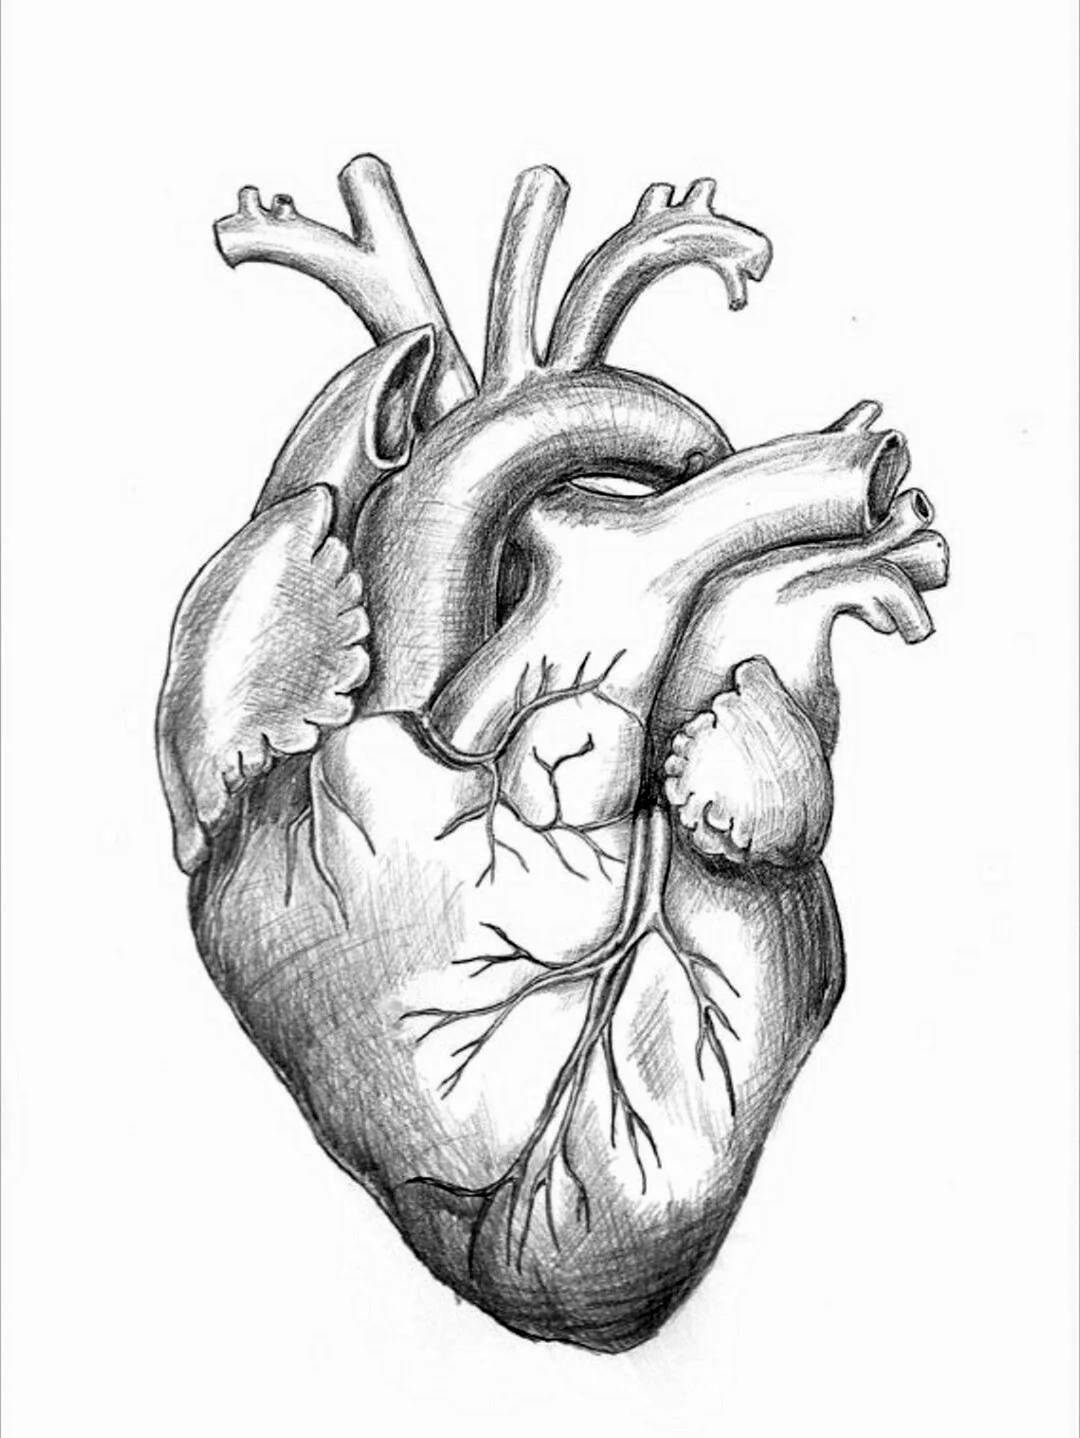 Сердце человека анатомия. Для срисовки